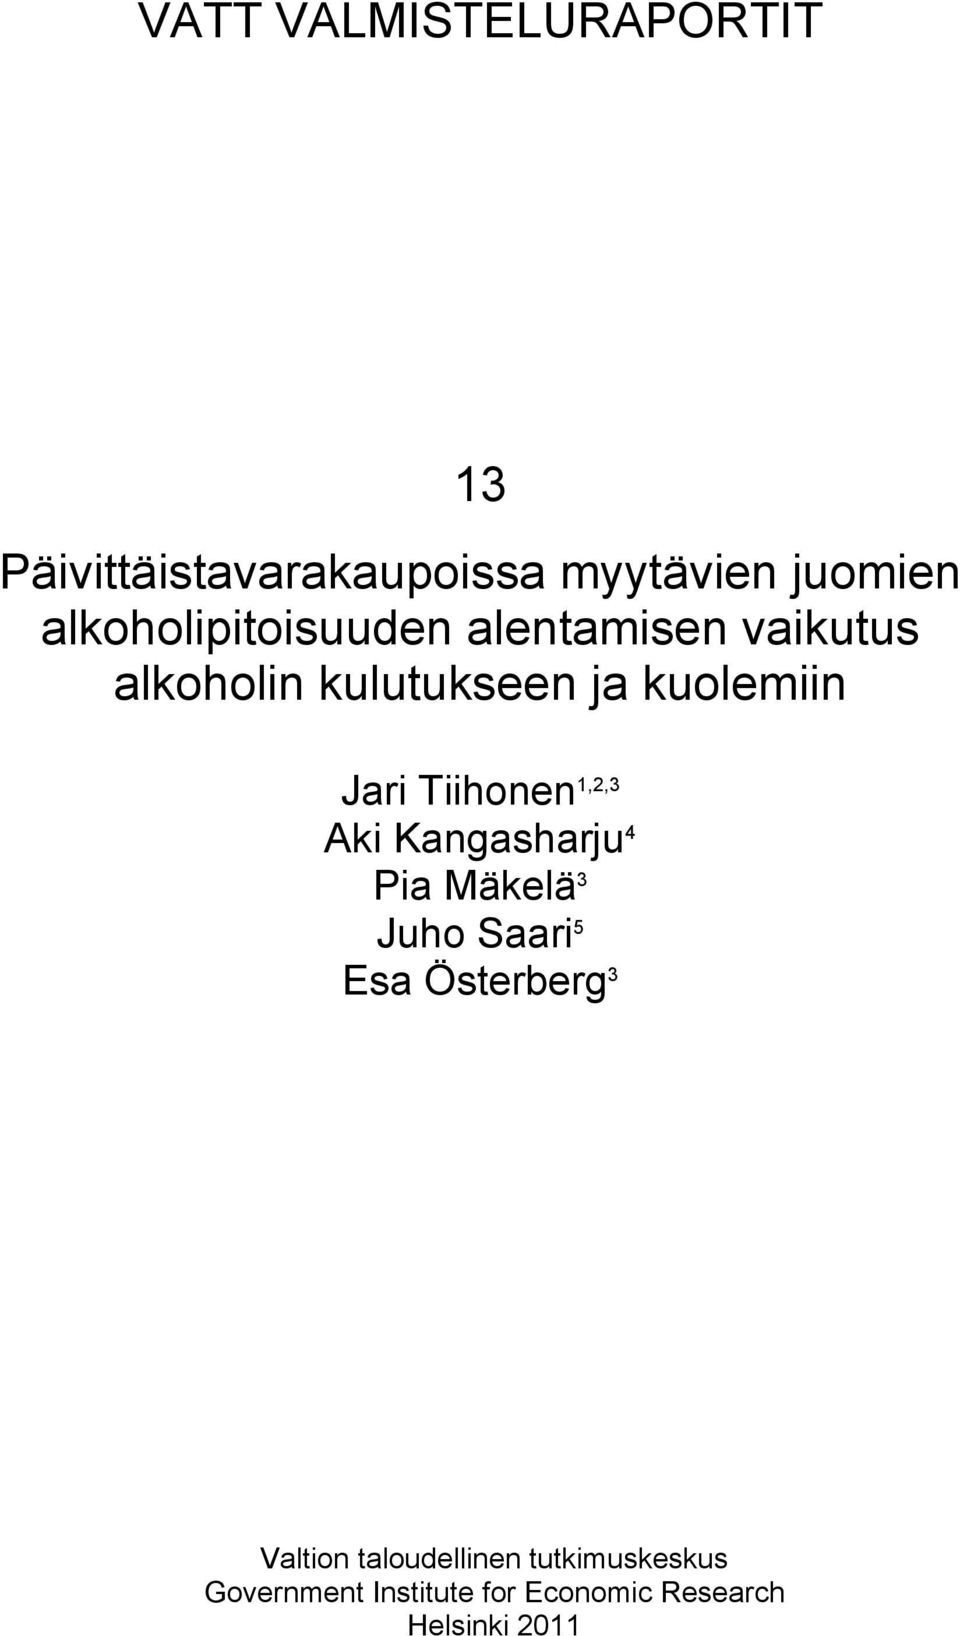 Jari Tiihonen 1,2,3 Aki Kangasharju 4 Pia Mäkelä 3 Juho Saari 5 Esa Österberg 3